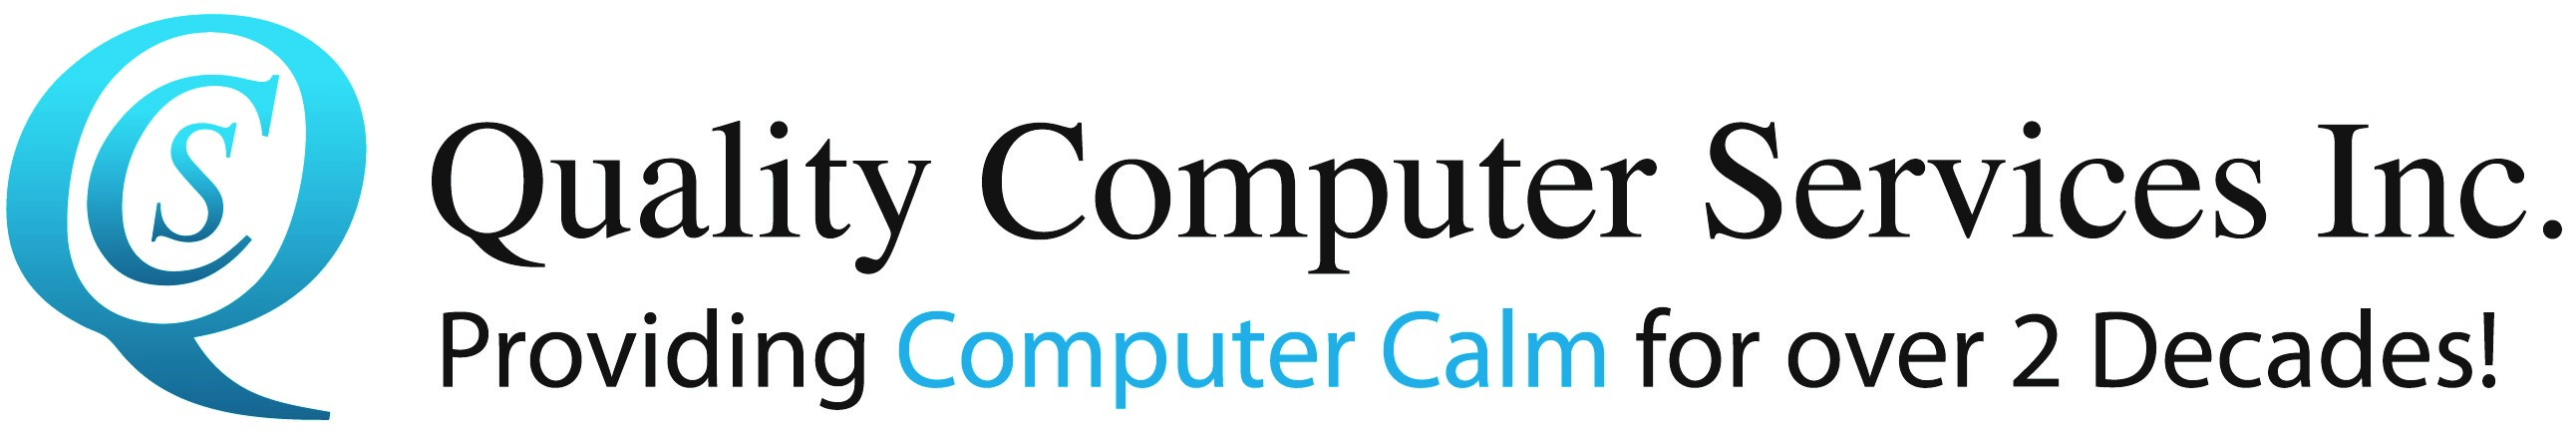 computercalm Biller Logo